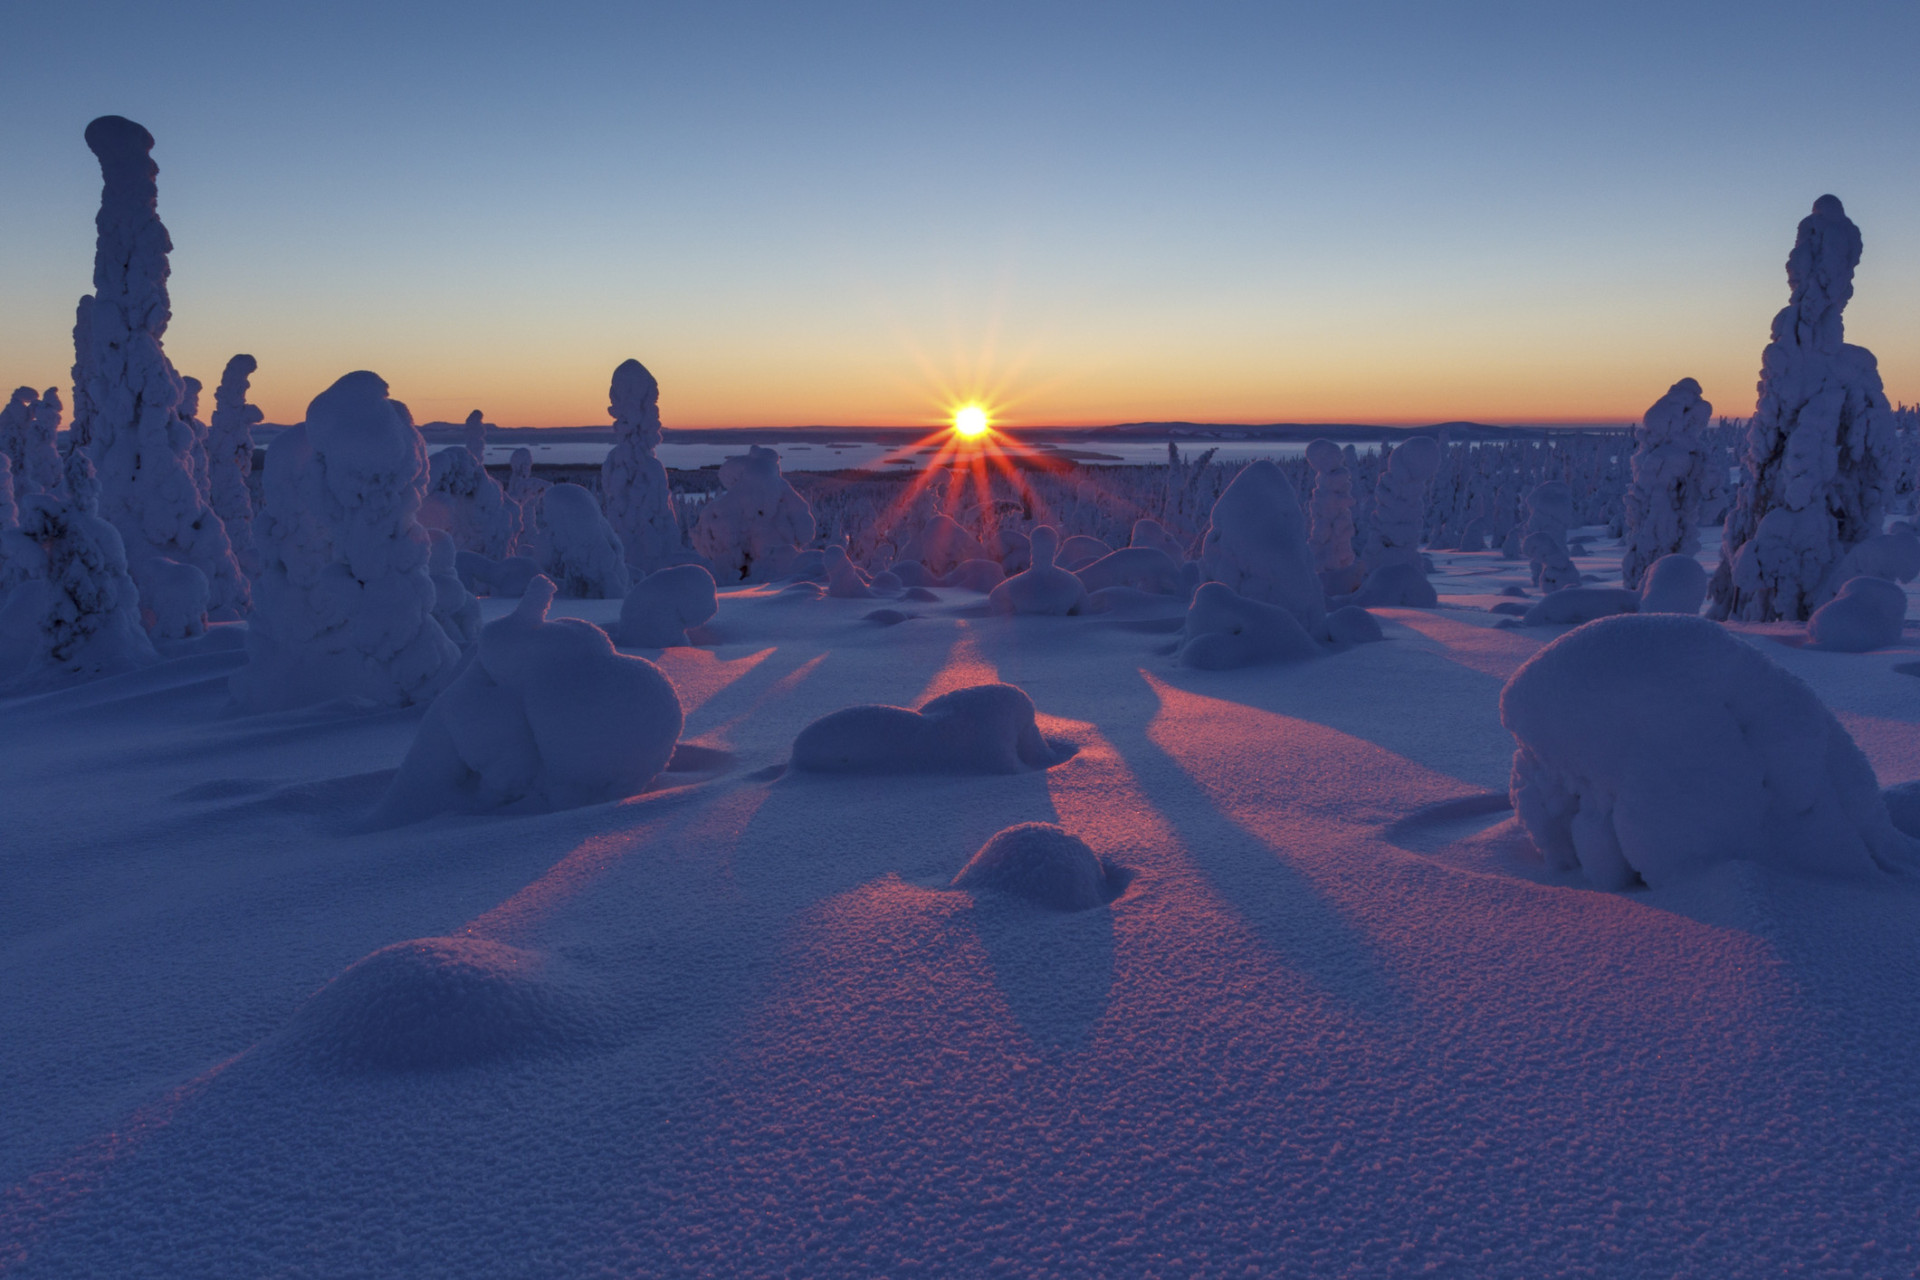 En un seul battement de cils et le jour disparaît. L'hiver en Laponie est long et sombre, le soleil ne faisant qu'une brève apparition quotidienne.<p>Tu pourrais aussi aimer:<a href="https://www.starsinsider.com/n/417566?utm_source=msn.com&utm_medium=display&utm_campaign=referral_description&utm_content=309275v3"> Quand les stars traînent leurs parents en justice</a></p>